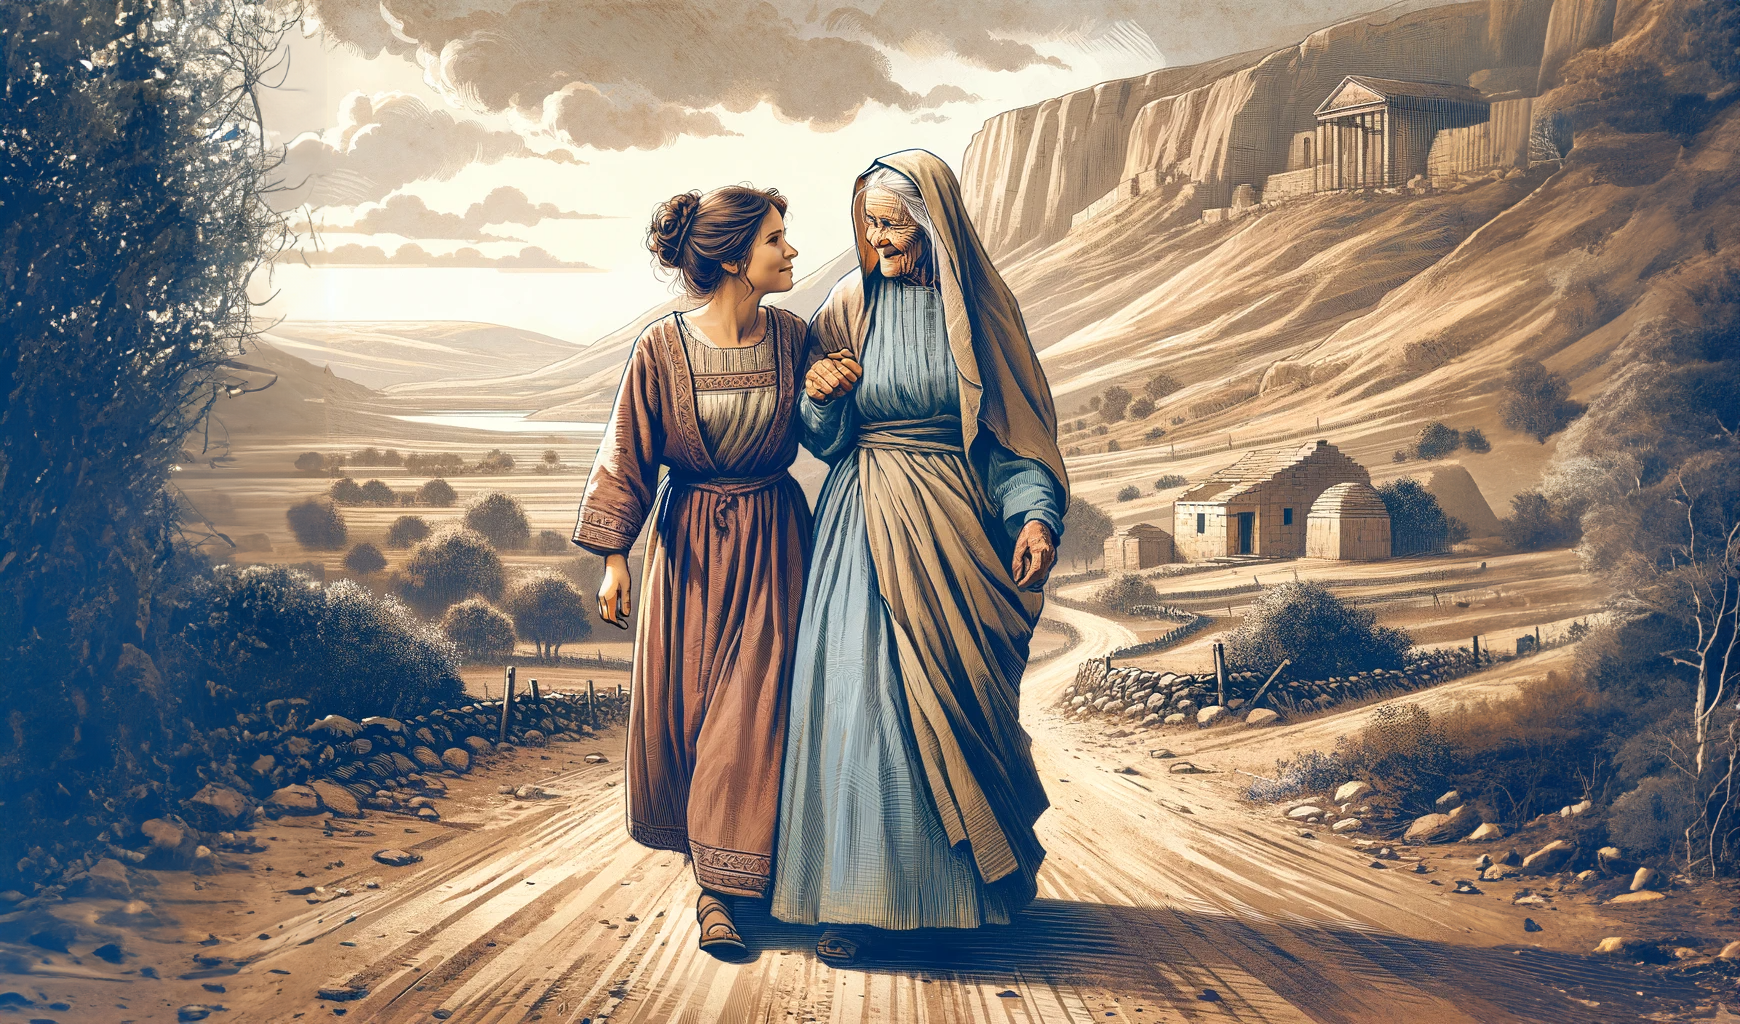 Historien om Rut og hennes svigermor Noomi er en troshistorie på tvers av generasjoner. Illustrasjon: Dall-E.